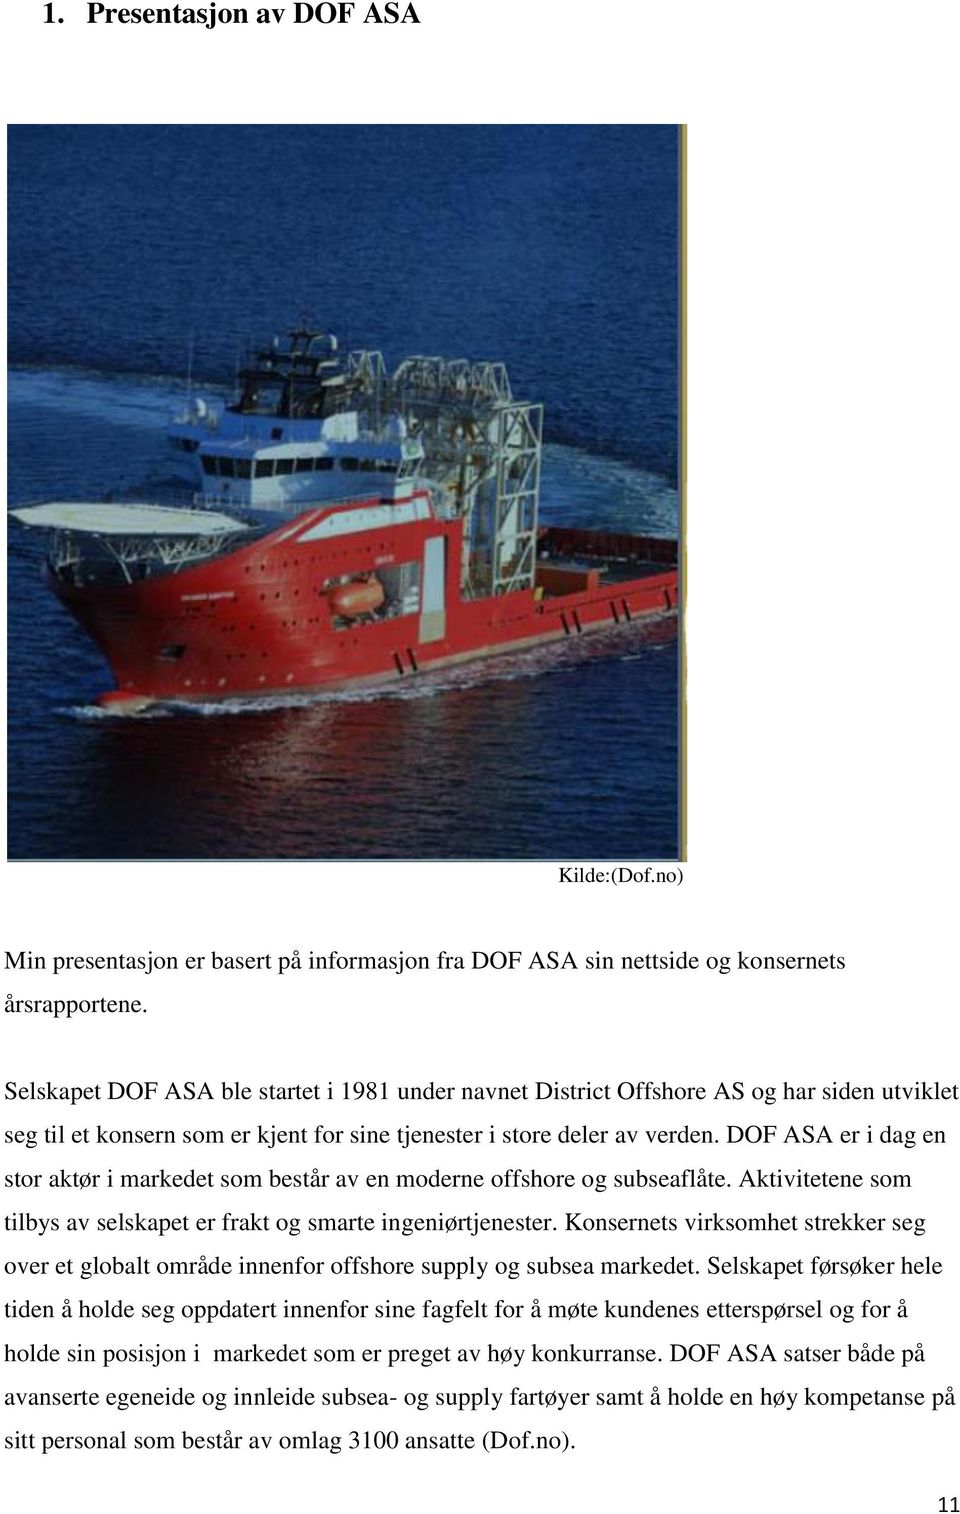 DOF ASA er i dag en stor aktør i markedet som består av en moderne offshore og subseaflåte. Aktivitetene som tilbys av selskapet er frakt og smarte ingeniørtjenester.